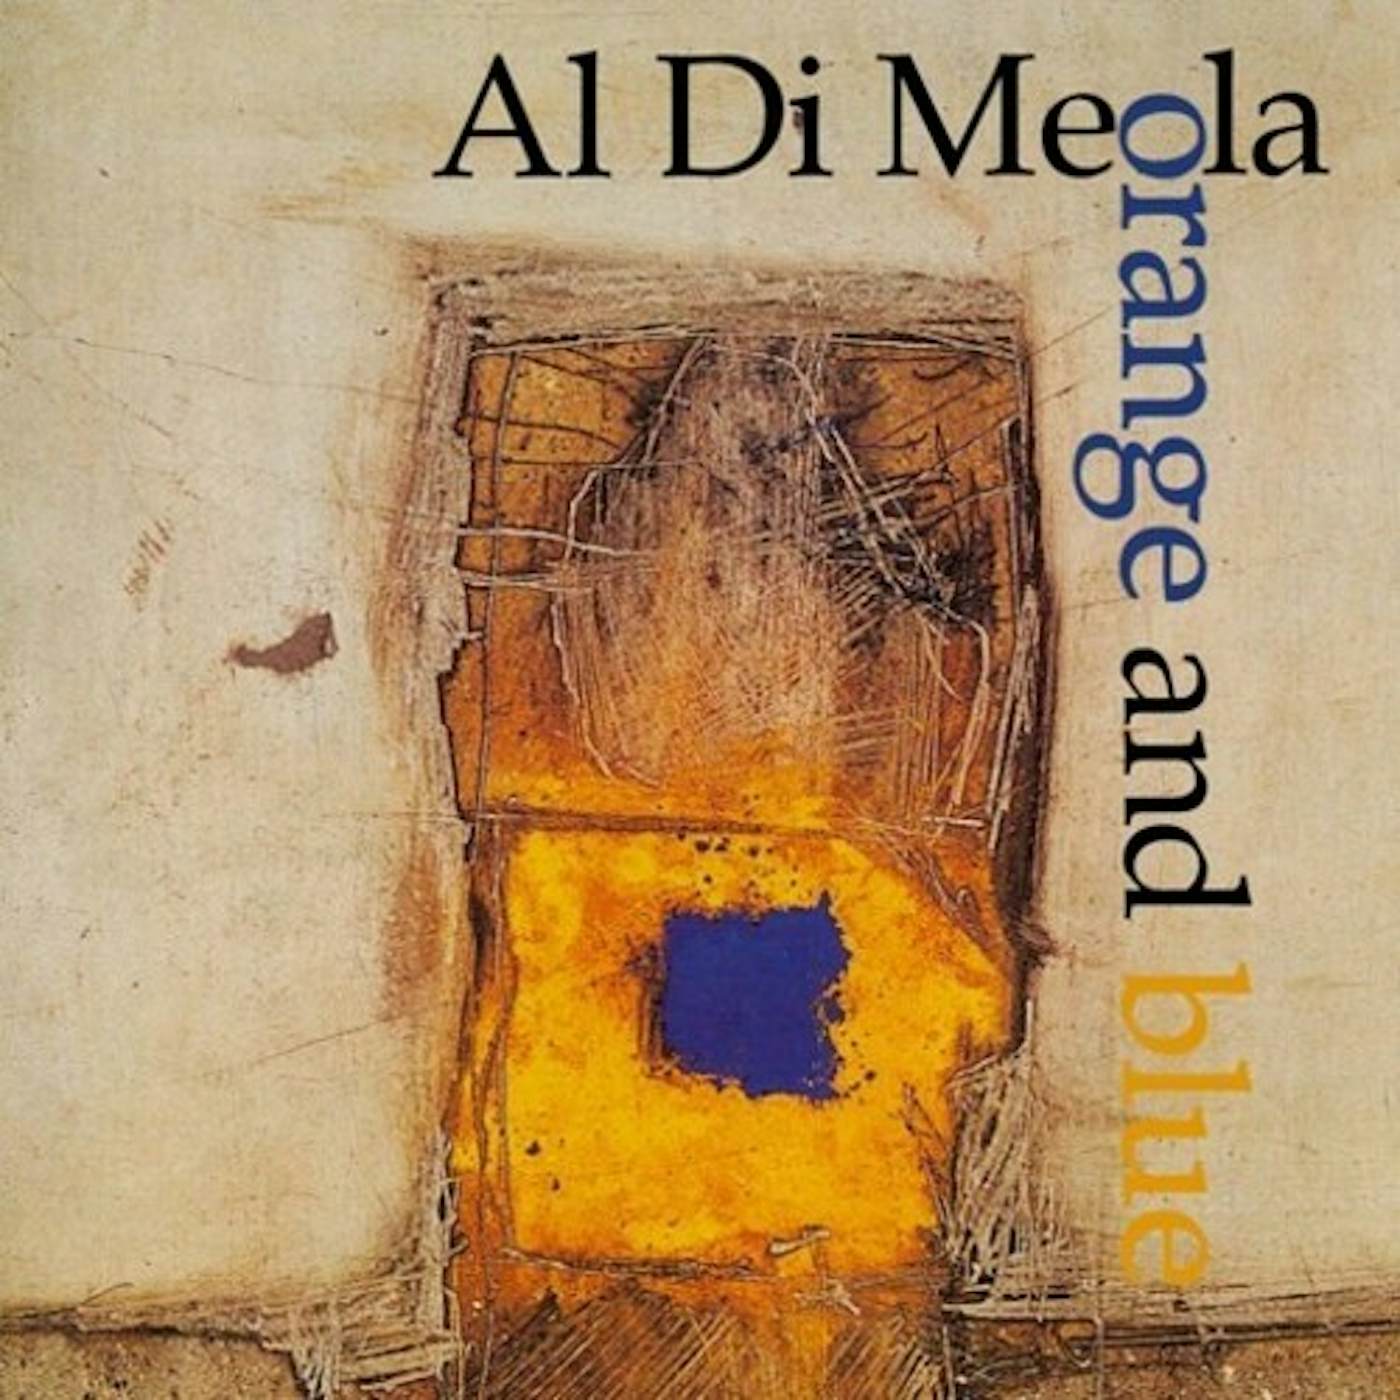 Al Di Meola Orange and Blue Vinyl Record